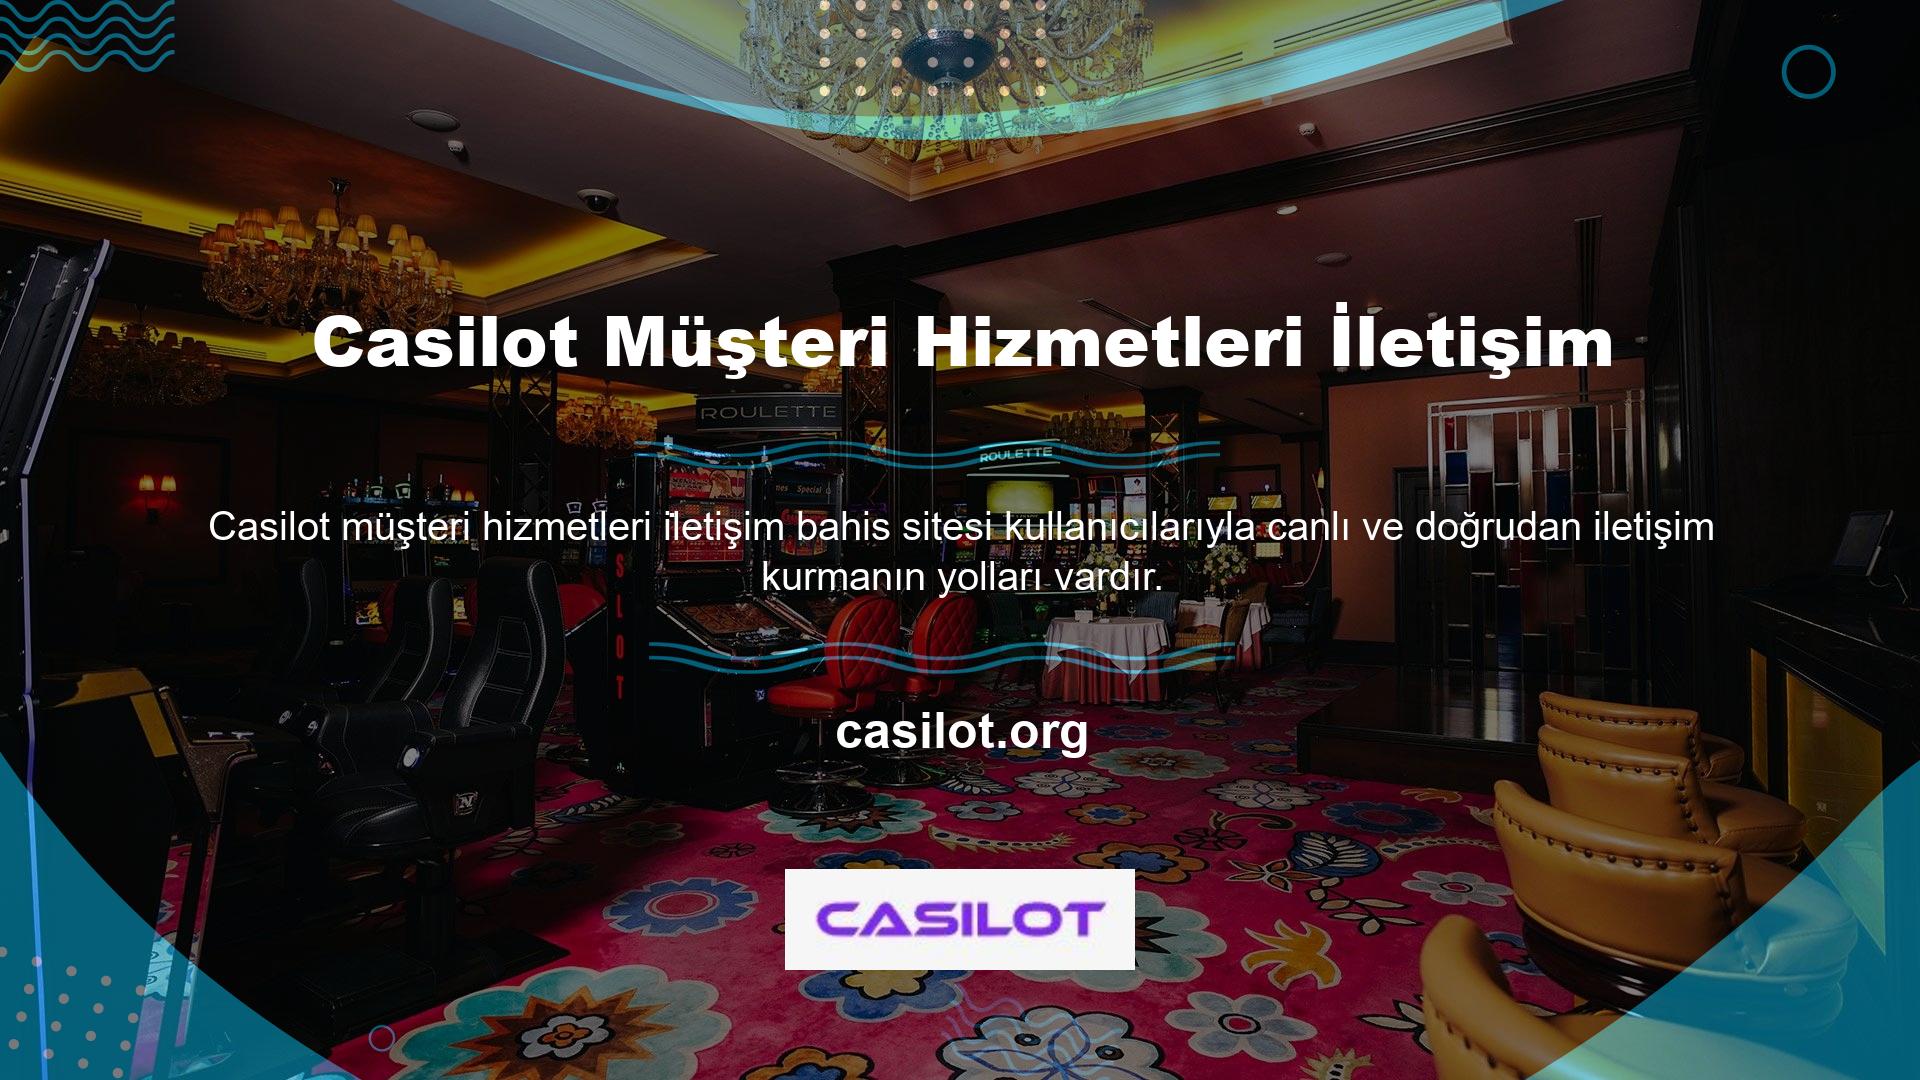 Casilot, "Hakkımızda" bölümündeki "Bize Ulaşın" seçeneği altında müşteri hizmetleri bilgilerini sunmaktadır